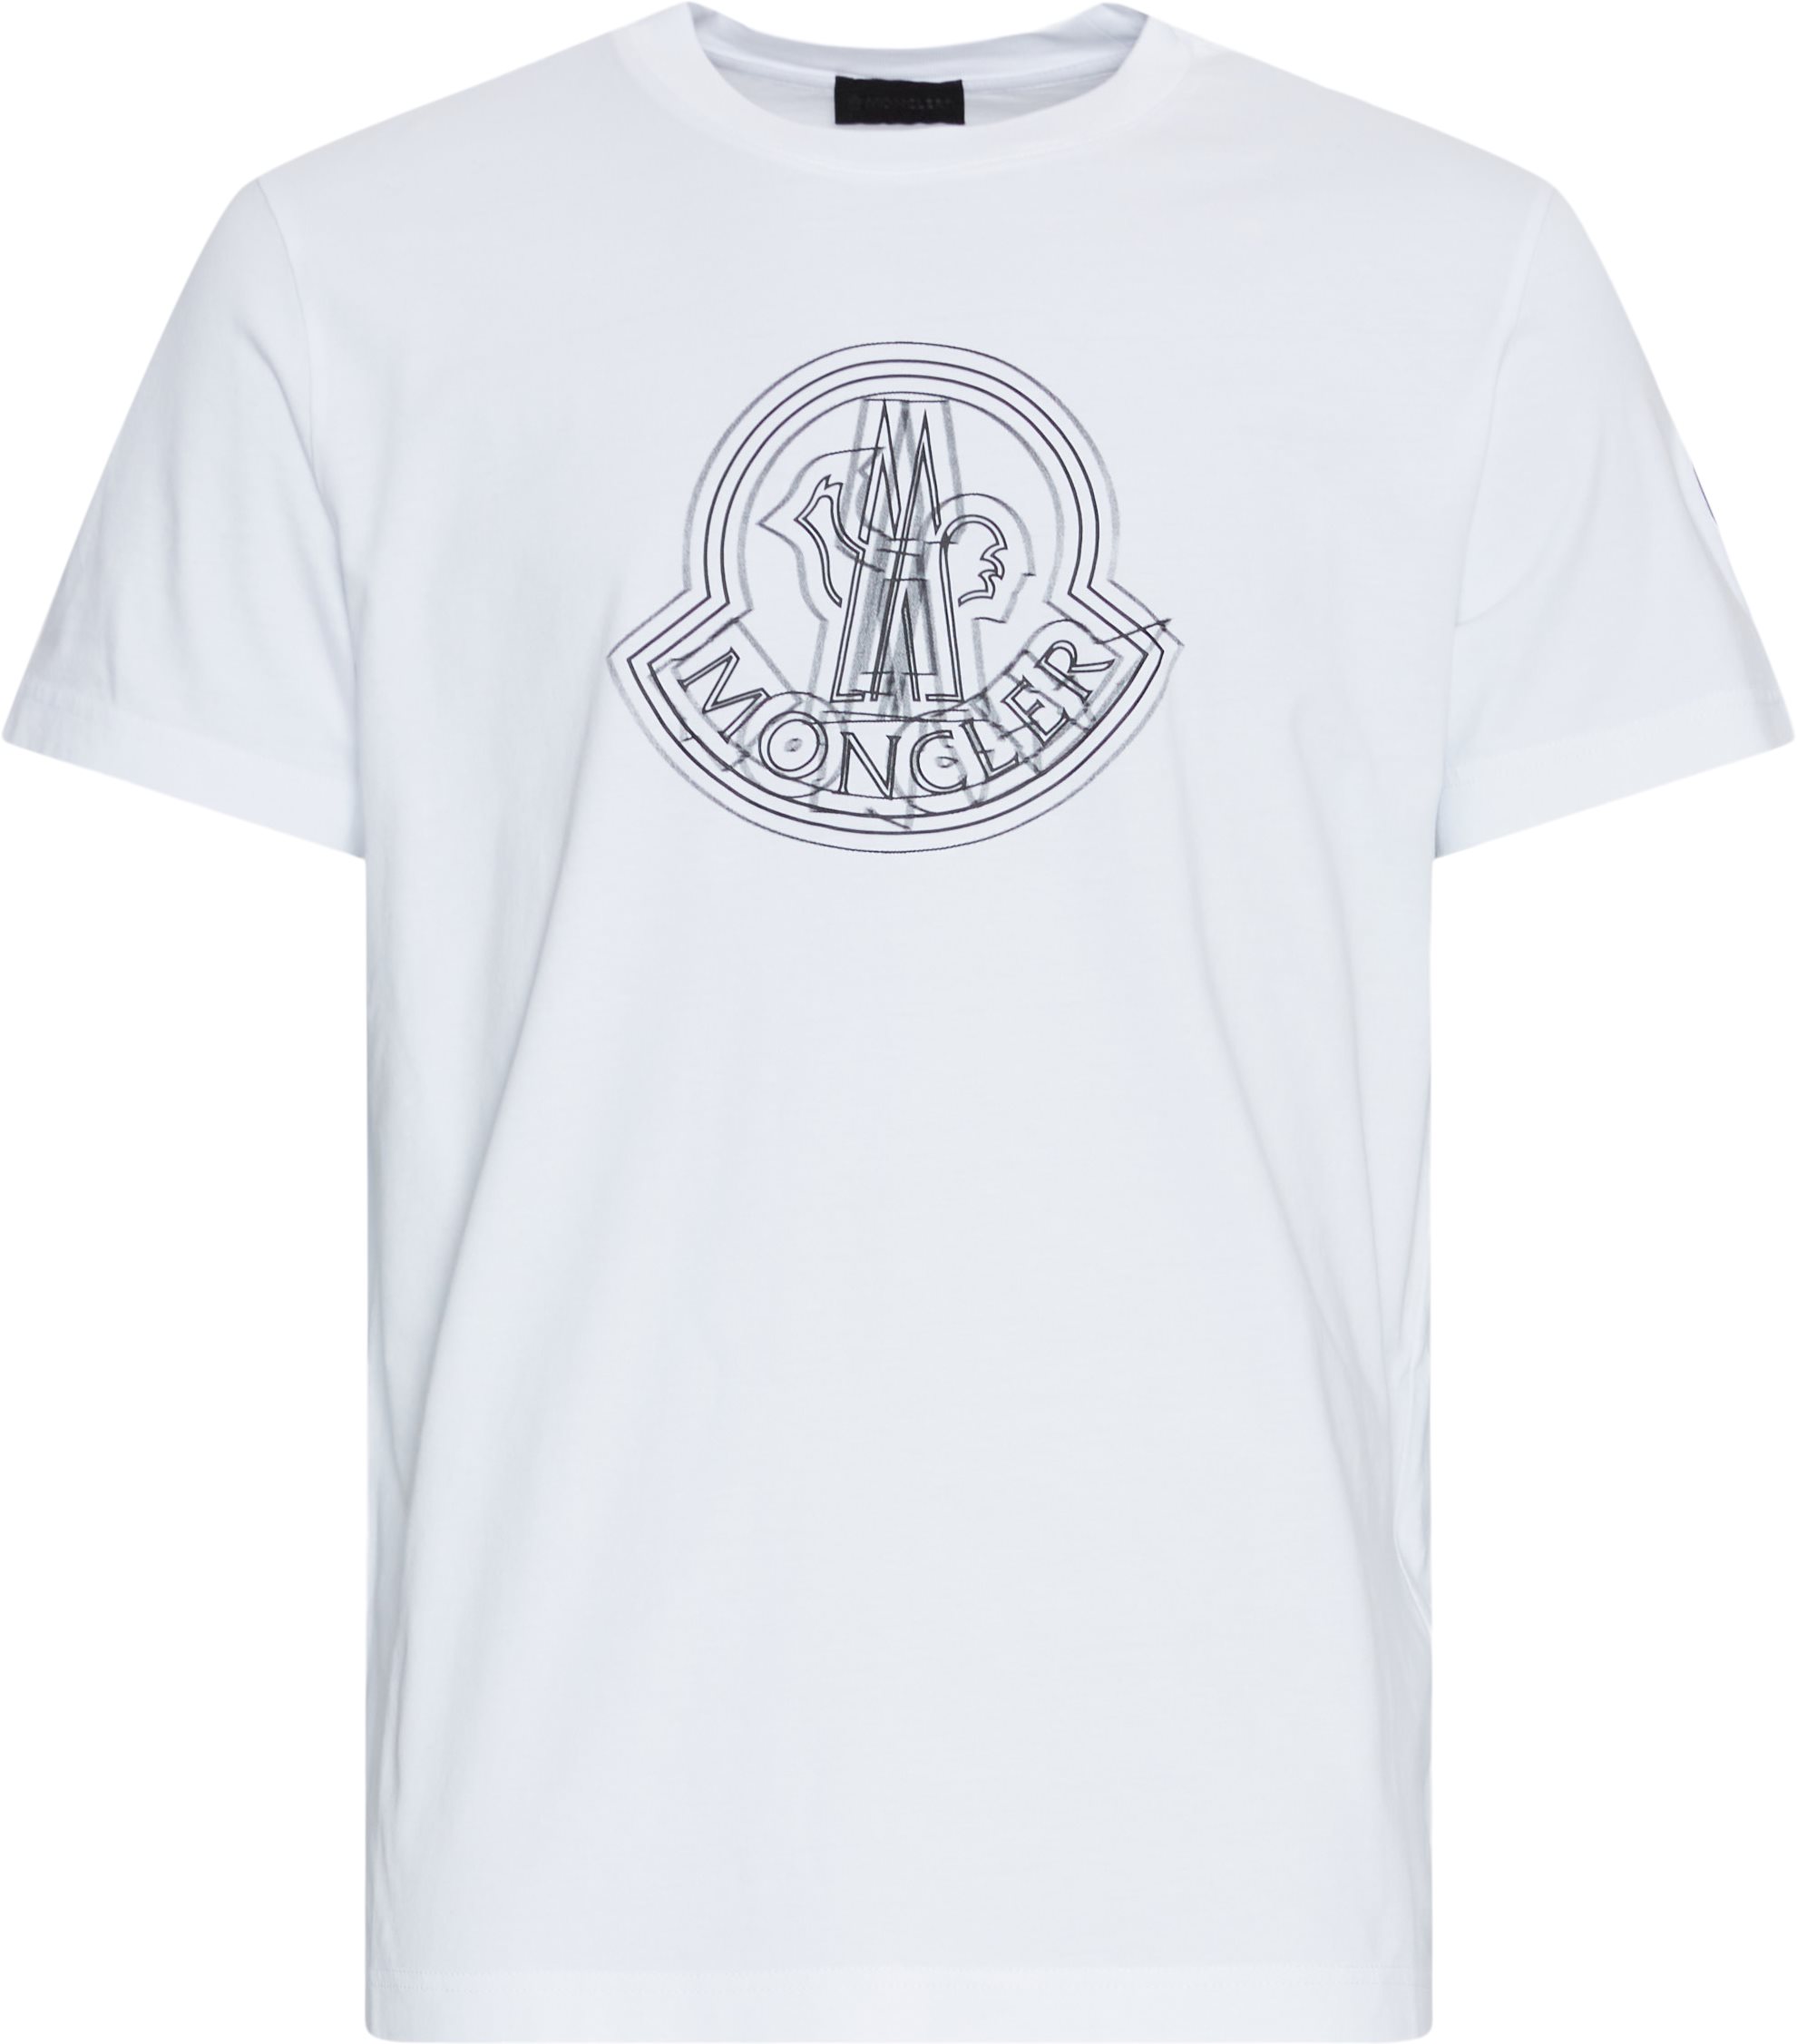 Moncler T-shirts 8C00028 89A17 White